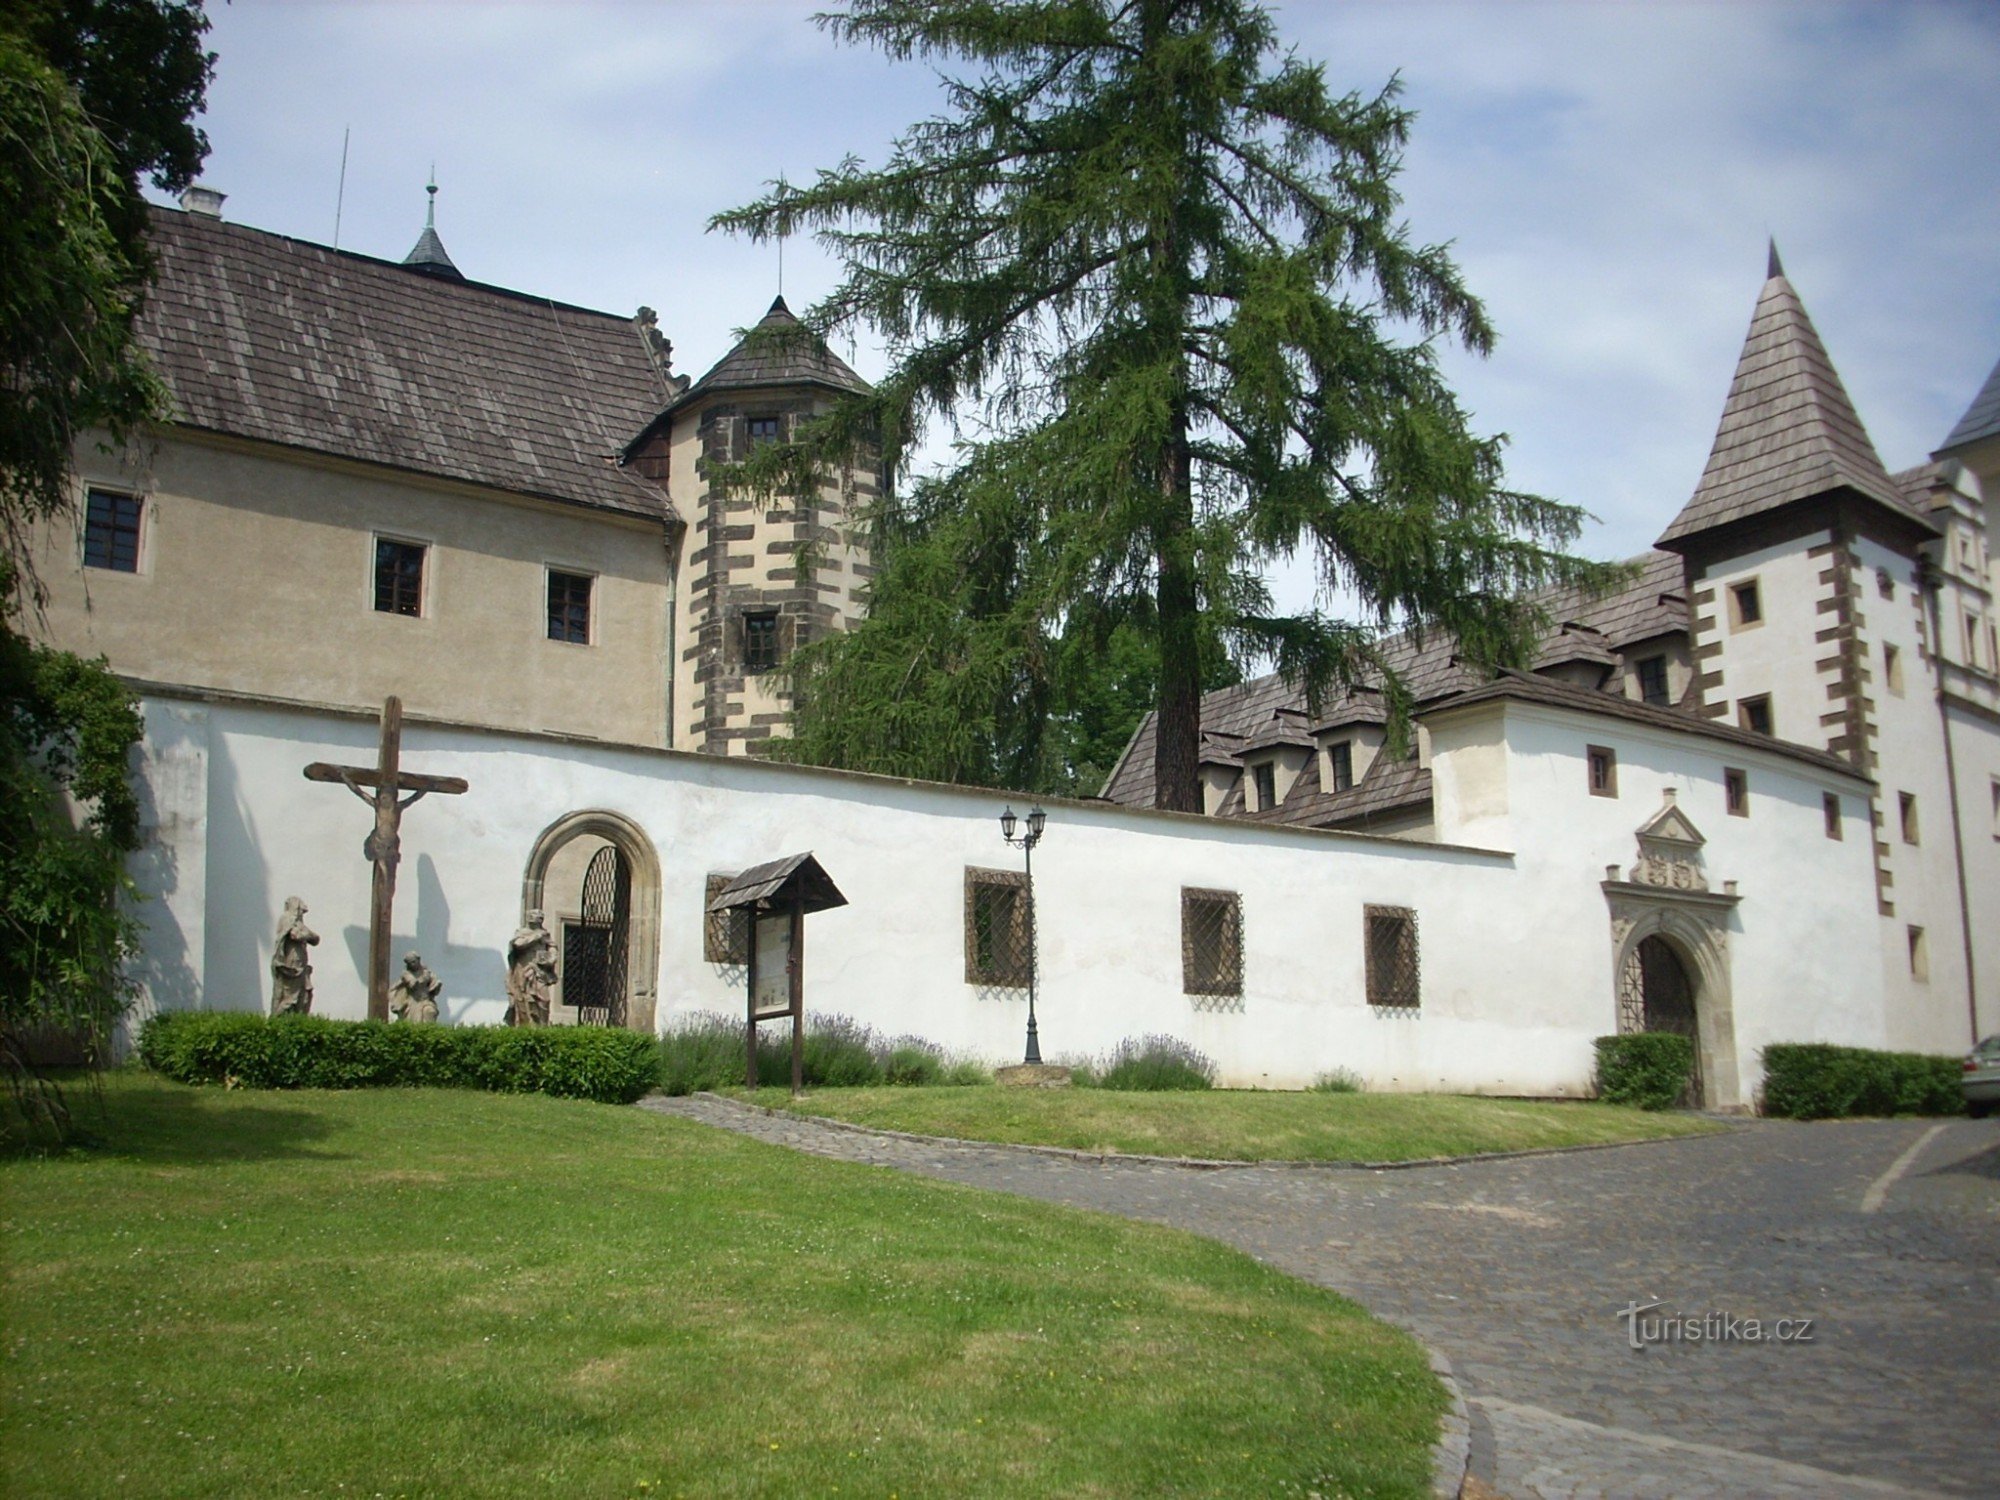 Ploučnická vyhlídka a zámek Benešov nad Ploučnicí